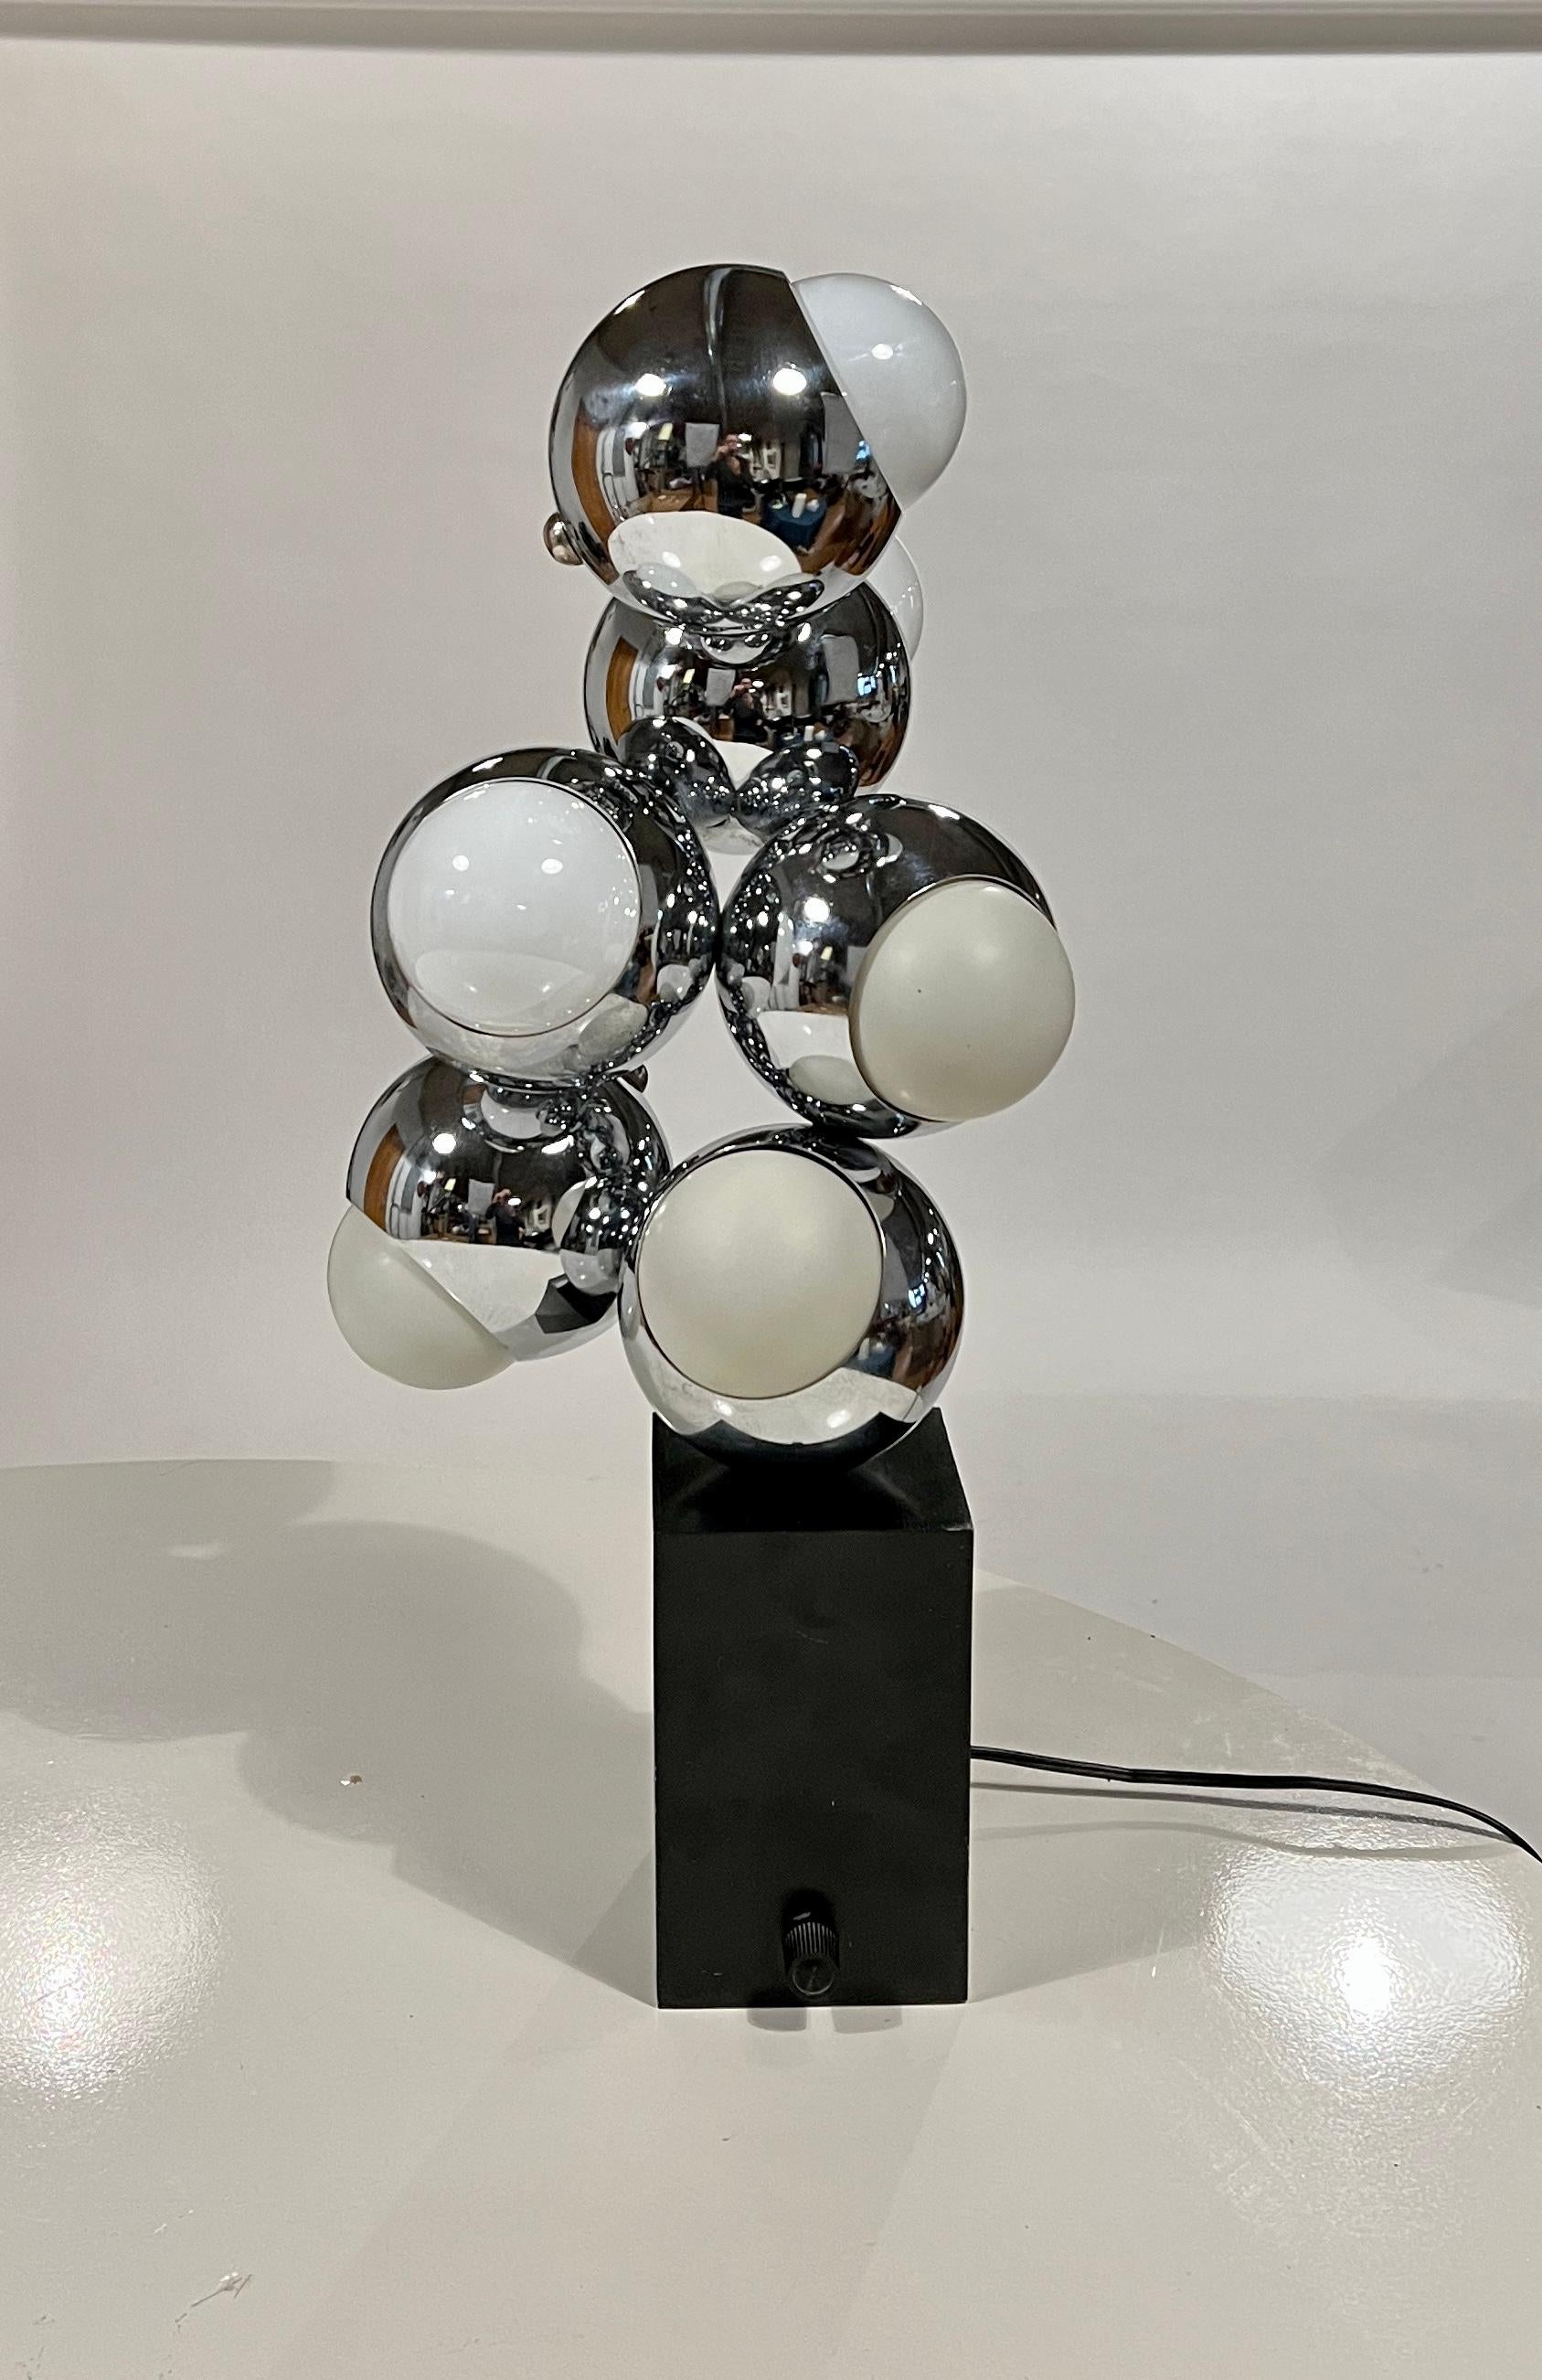 North American Space Age Molecule Lamp by Robert Sonneman